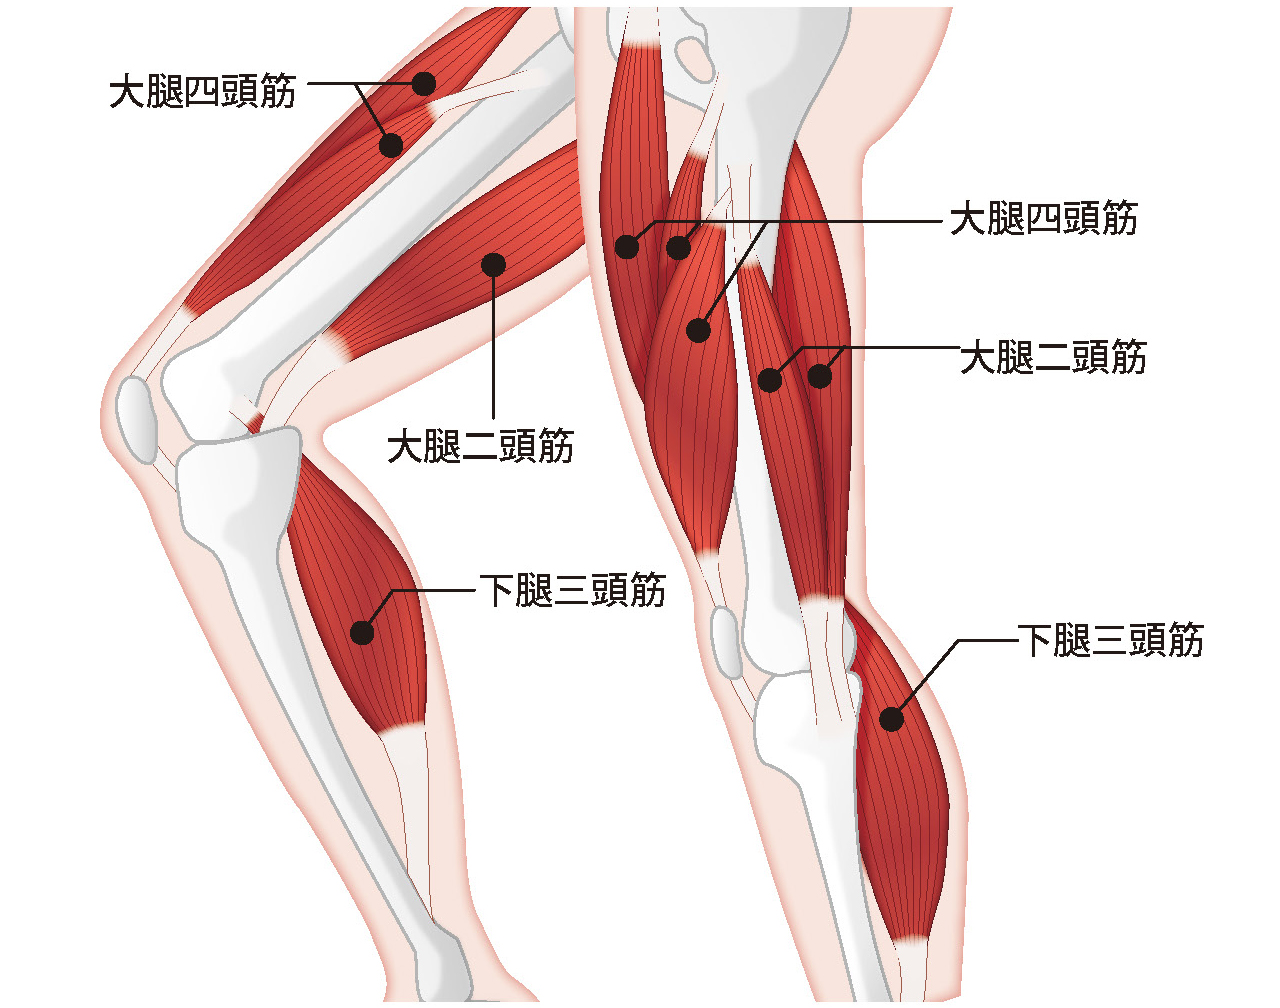 強い膝をつくる シャキット 札幌にあるレッドコード完備のフィットネス